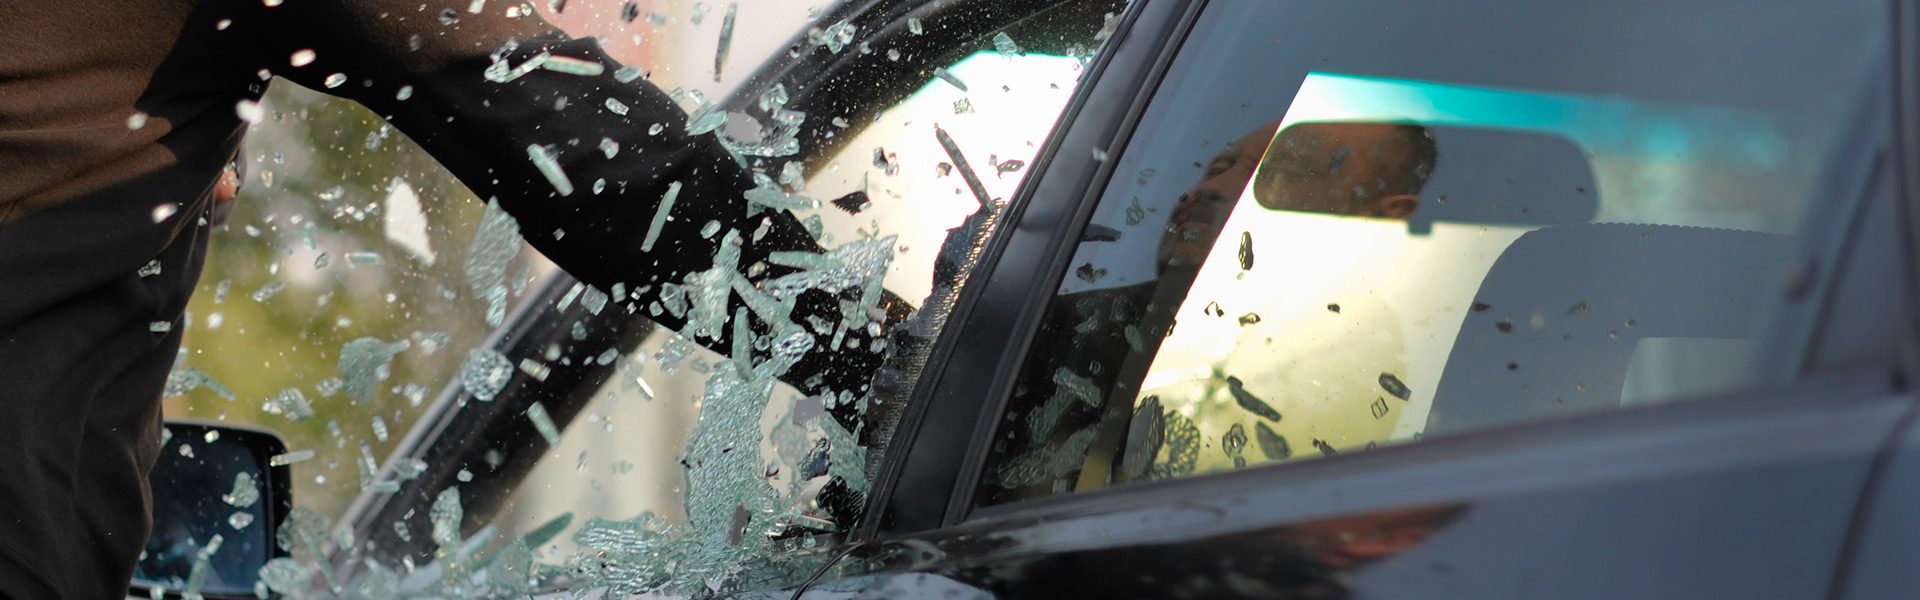 Pose de film de sécurité anti car jacking sur les vitrages automobiles -  Filmeo